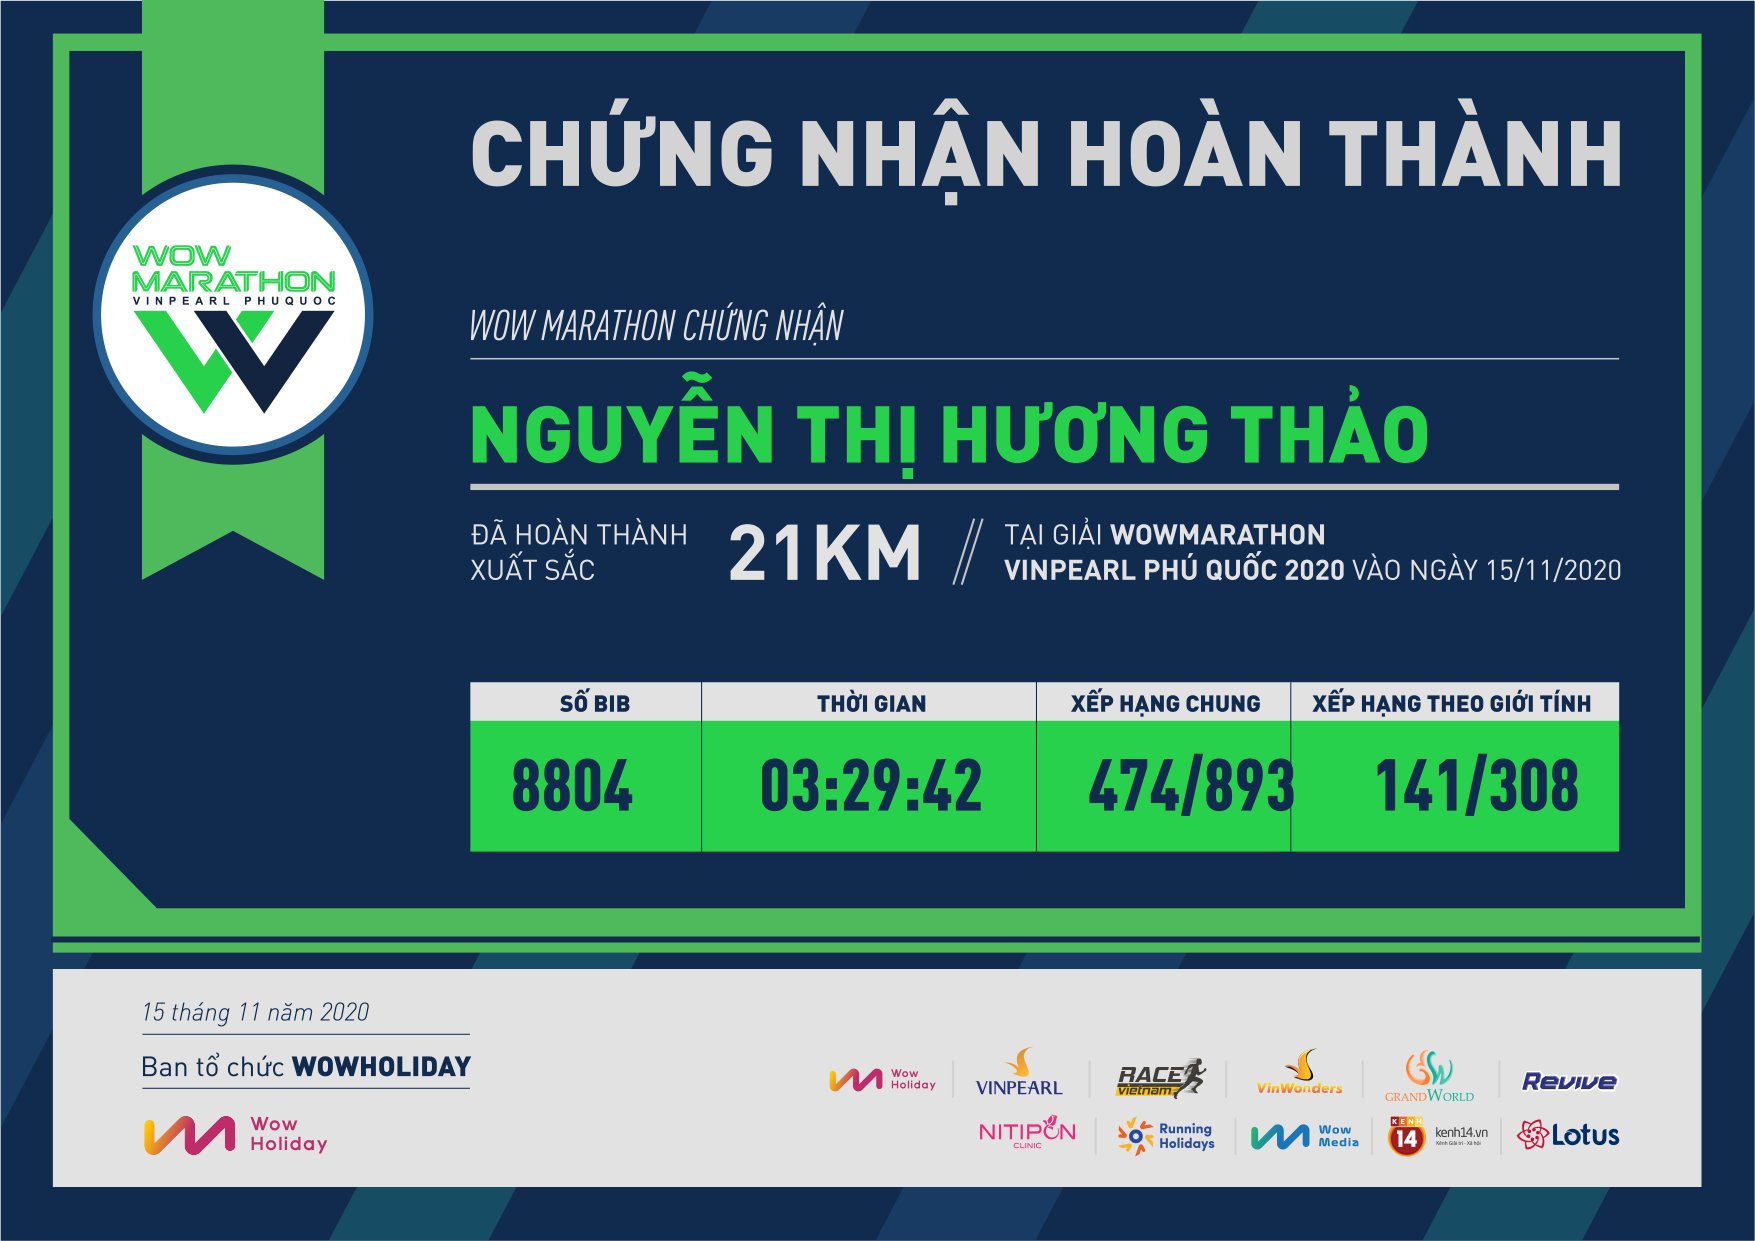 8804 - Nguyễn Thị Hương Thảo